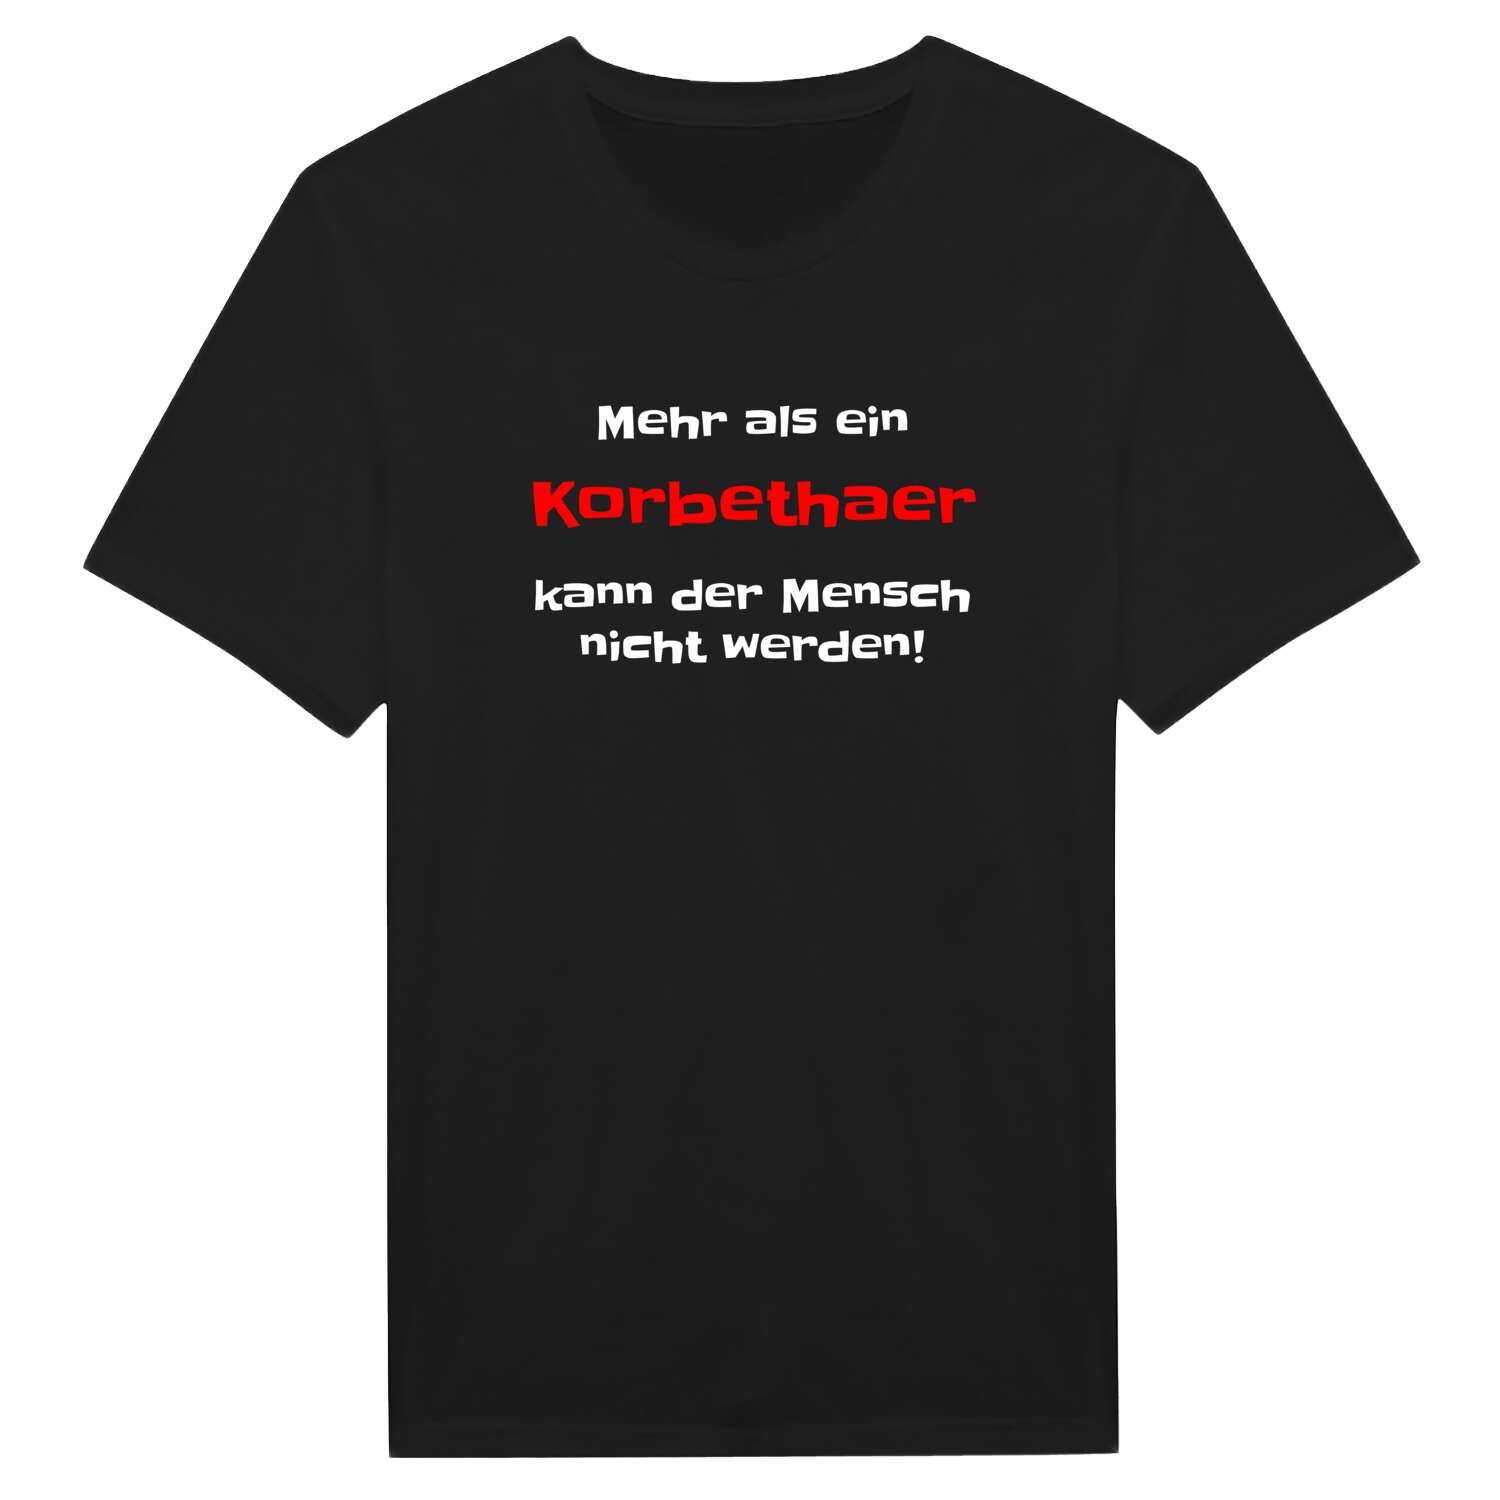 Korbetha T-Shirt »Mehr als ein«